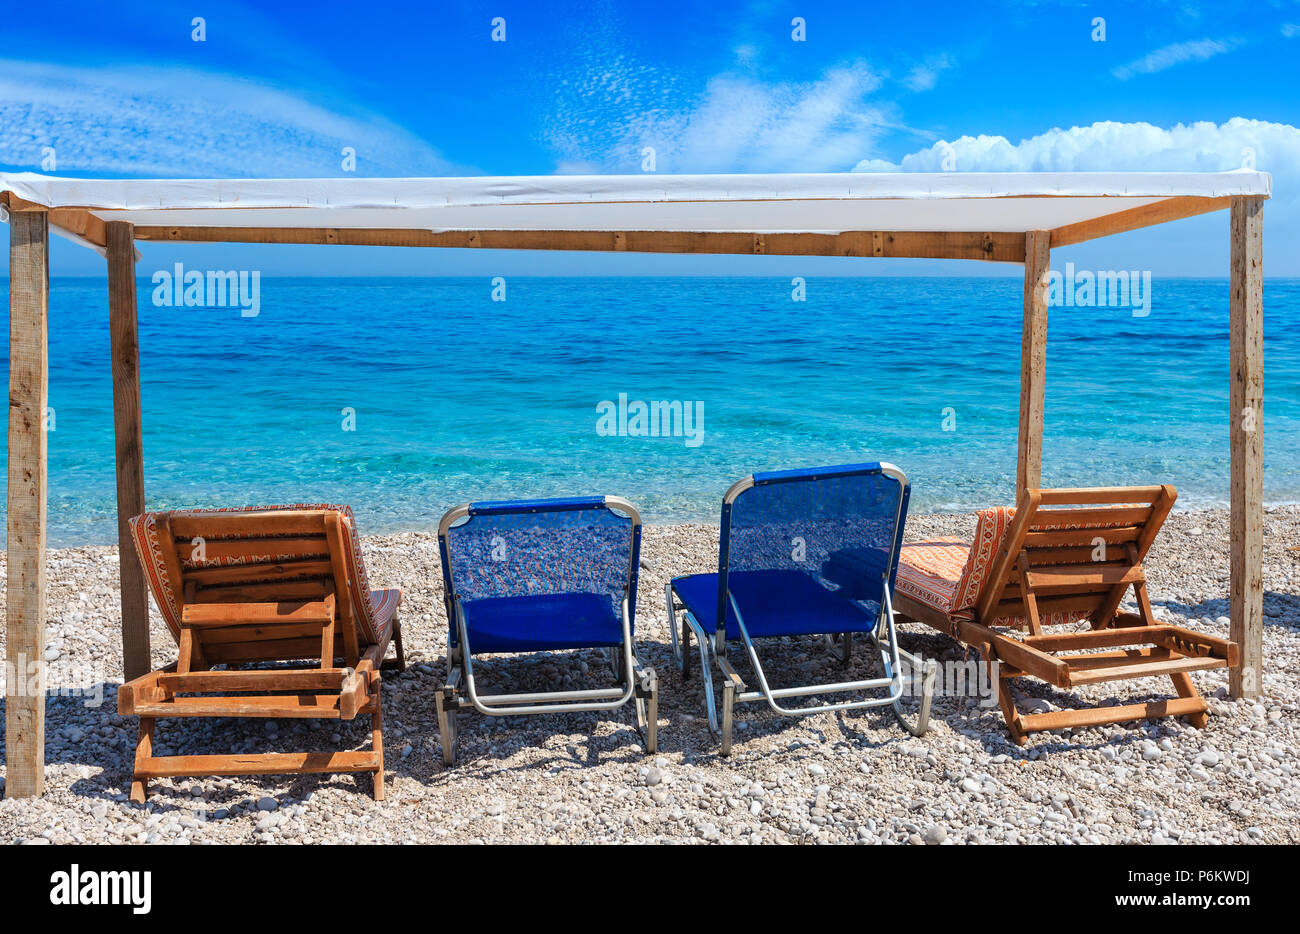 Sommer-morgen-Strand mit türkisblauem Wasser und Sonnenliegen (Albanien). Zwei Schüsse feststeppen Bild mit hoher Auflösung. Stockfoto